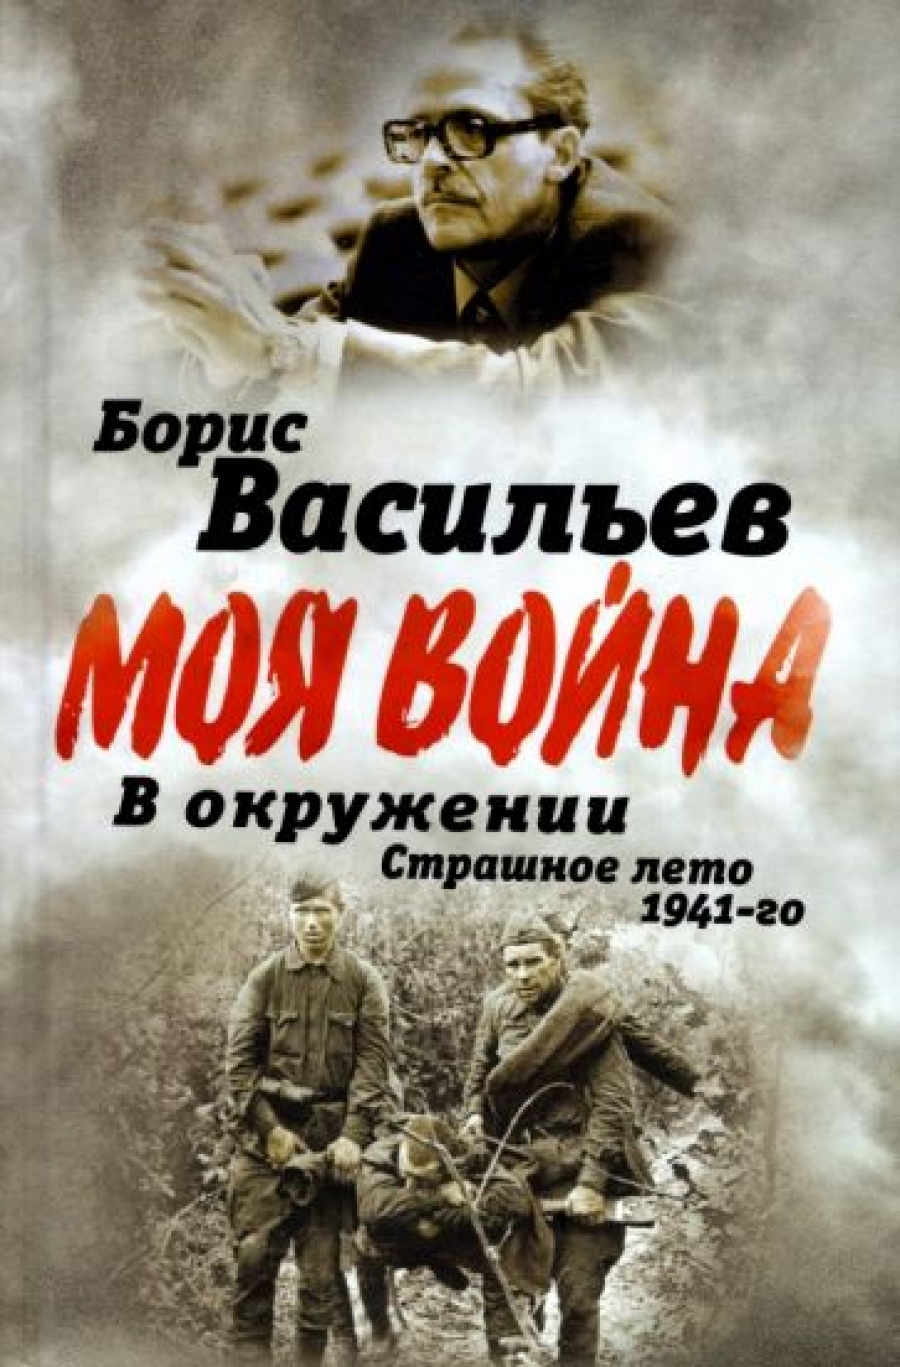 Васильев Б.Л. В окружении. Страшное лето 1941-го 